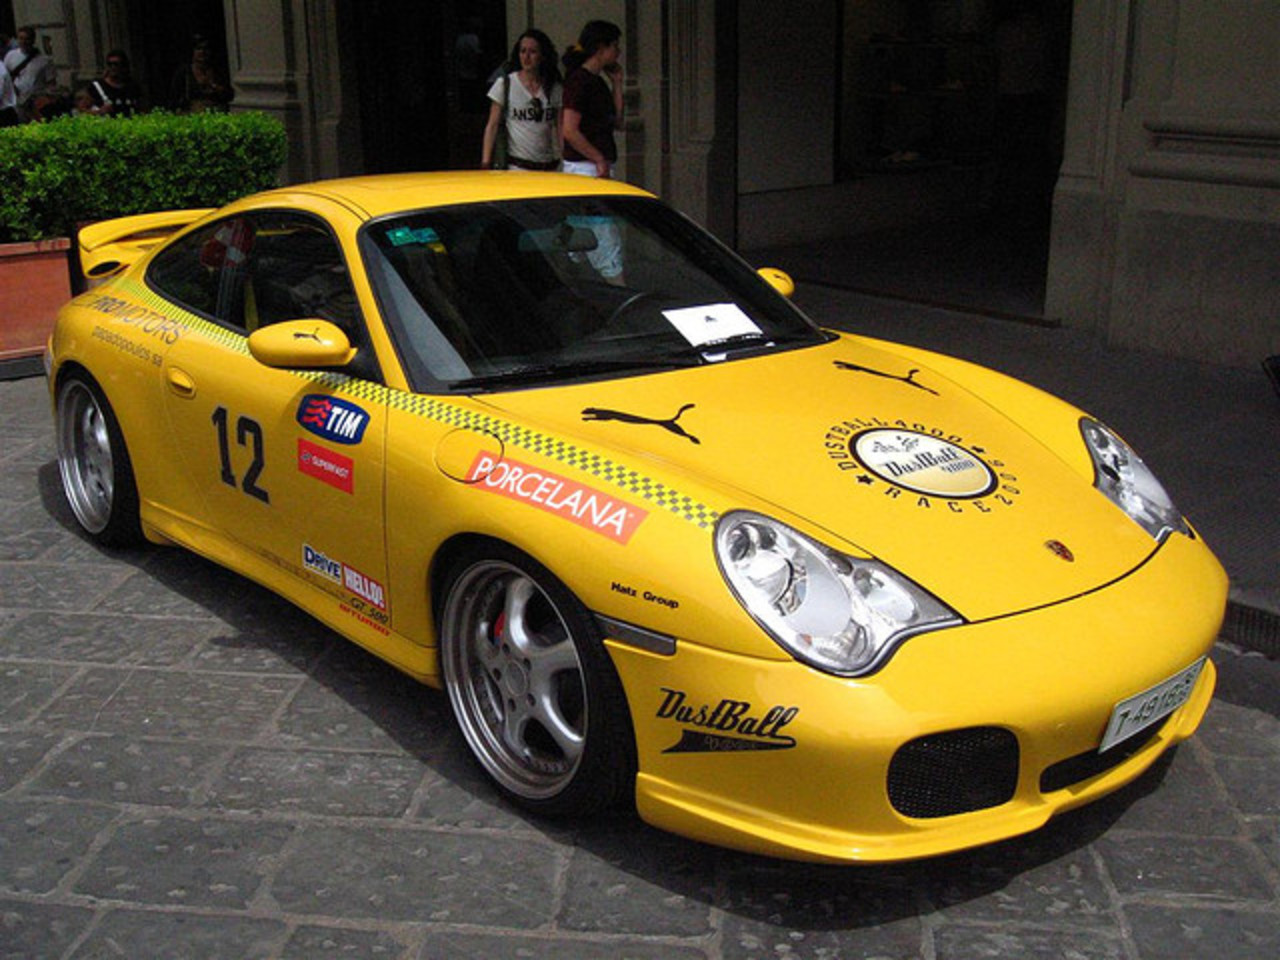 Porsche 911 Gemballa GT500 Biturbo | Flickr - Photo Sharing!